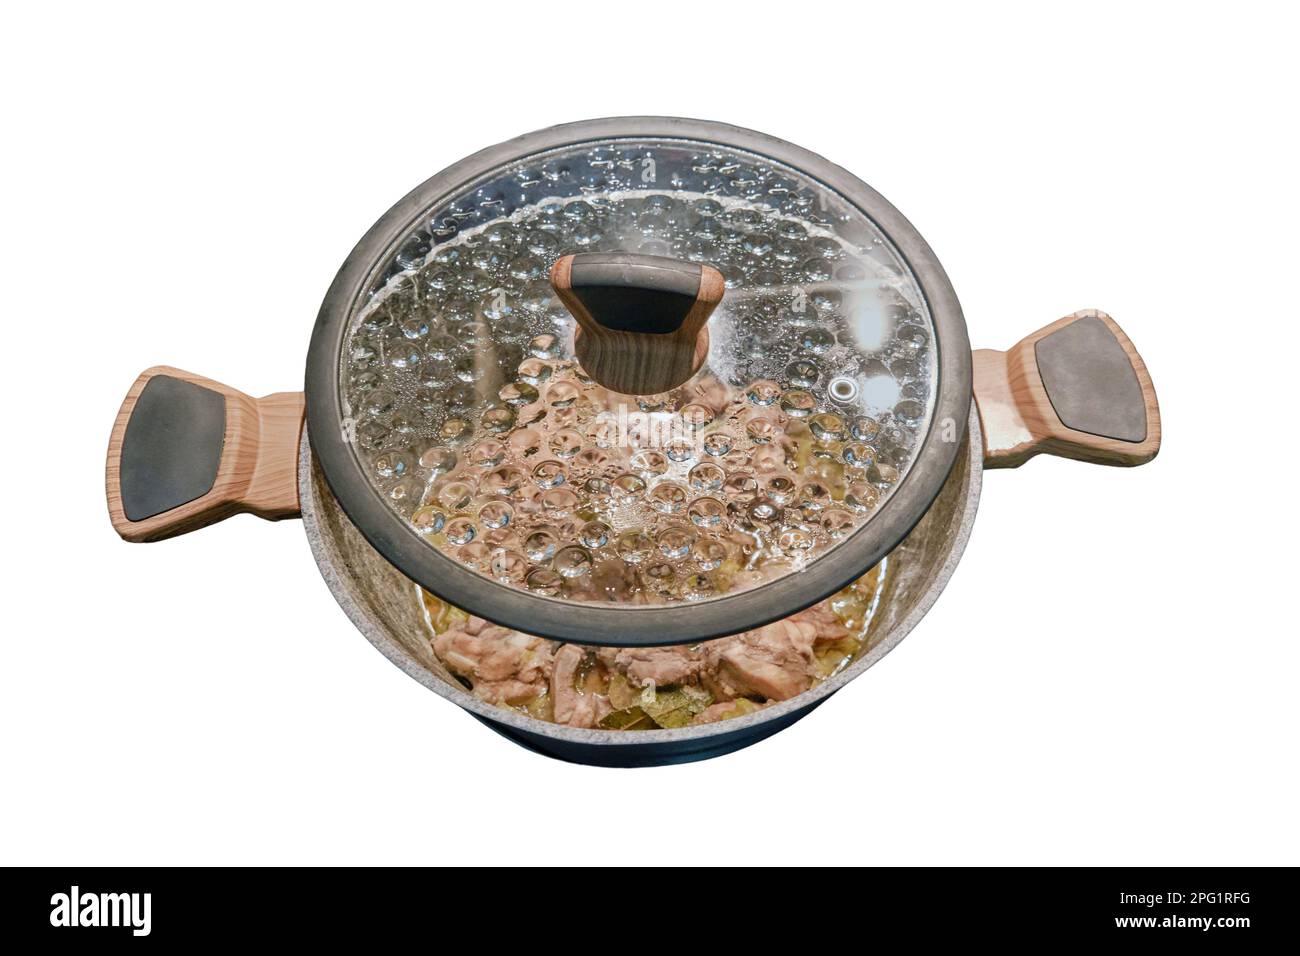 Le pot est placé sur une cuisinière électrique avec le couvercle ouvert, isolé sur un fond blanc Banque D'Images